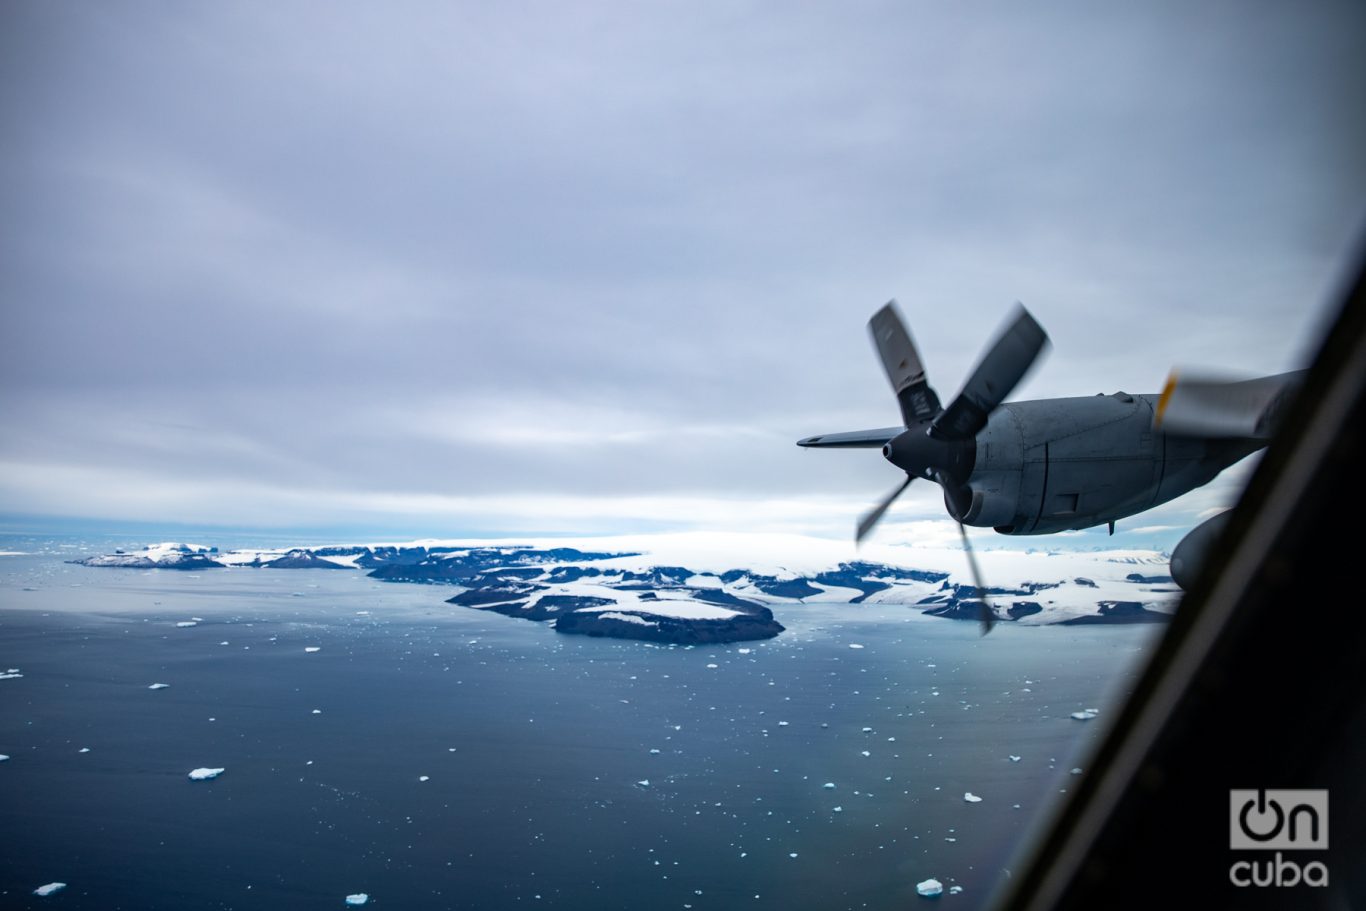 El hielo marino antártico, esencial para regular el clima global y mantener el equilibrio de los ecosistemas marinos. Foto: Kaloian.